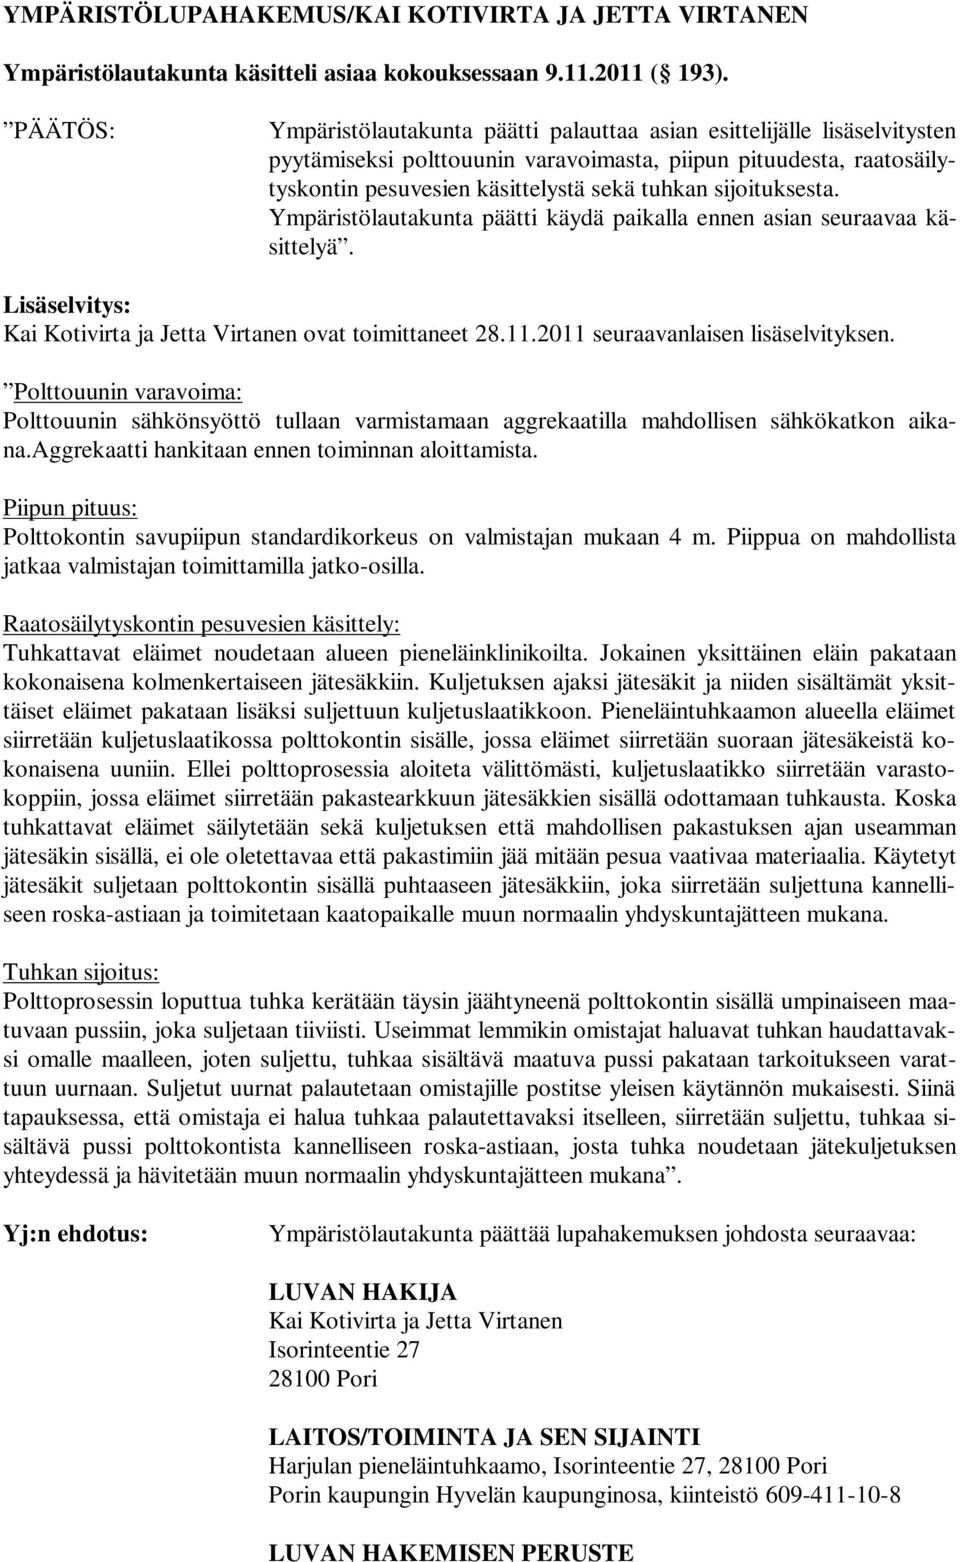 sijoituksesta. Ympäristölautakunta päätti käydä paikalla ennen asian seuraavaa käsittelyä. Lisäselvitys: Kai Kotivirta ja Jetta Virtanen ovat toimittaneet 28.11.2011 seuraavanlaisen lisäselvityksen.